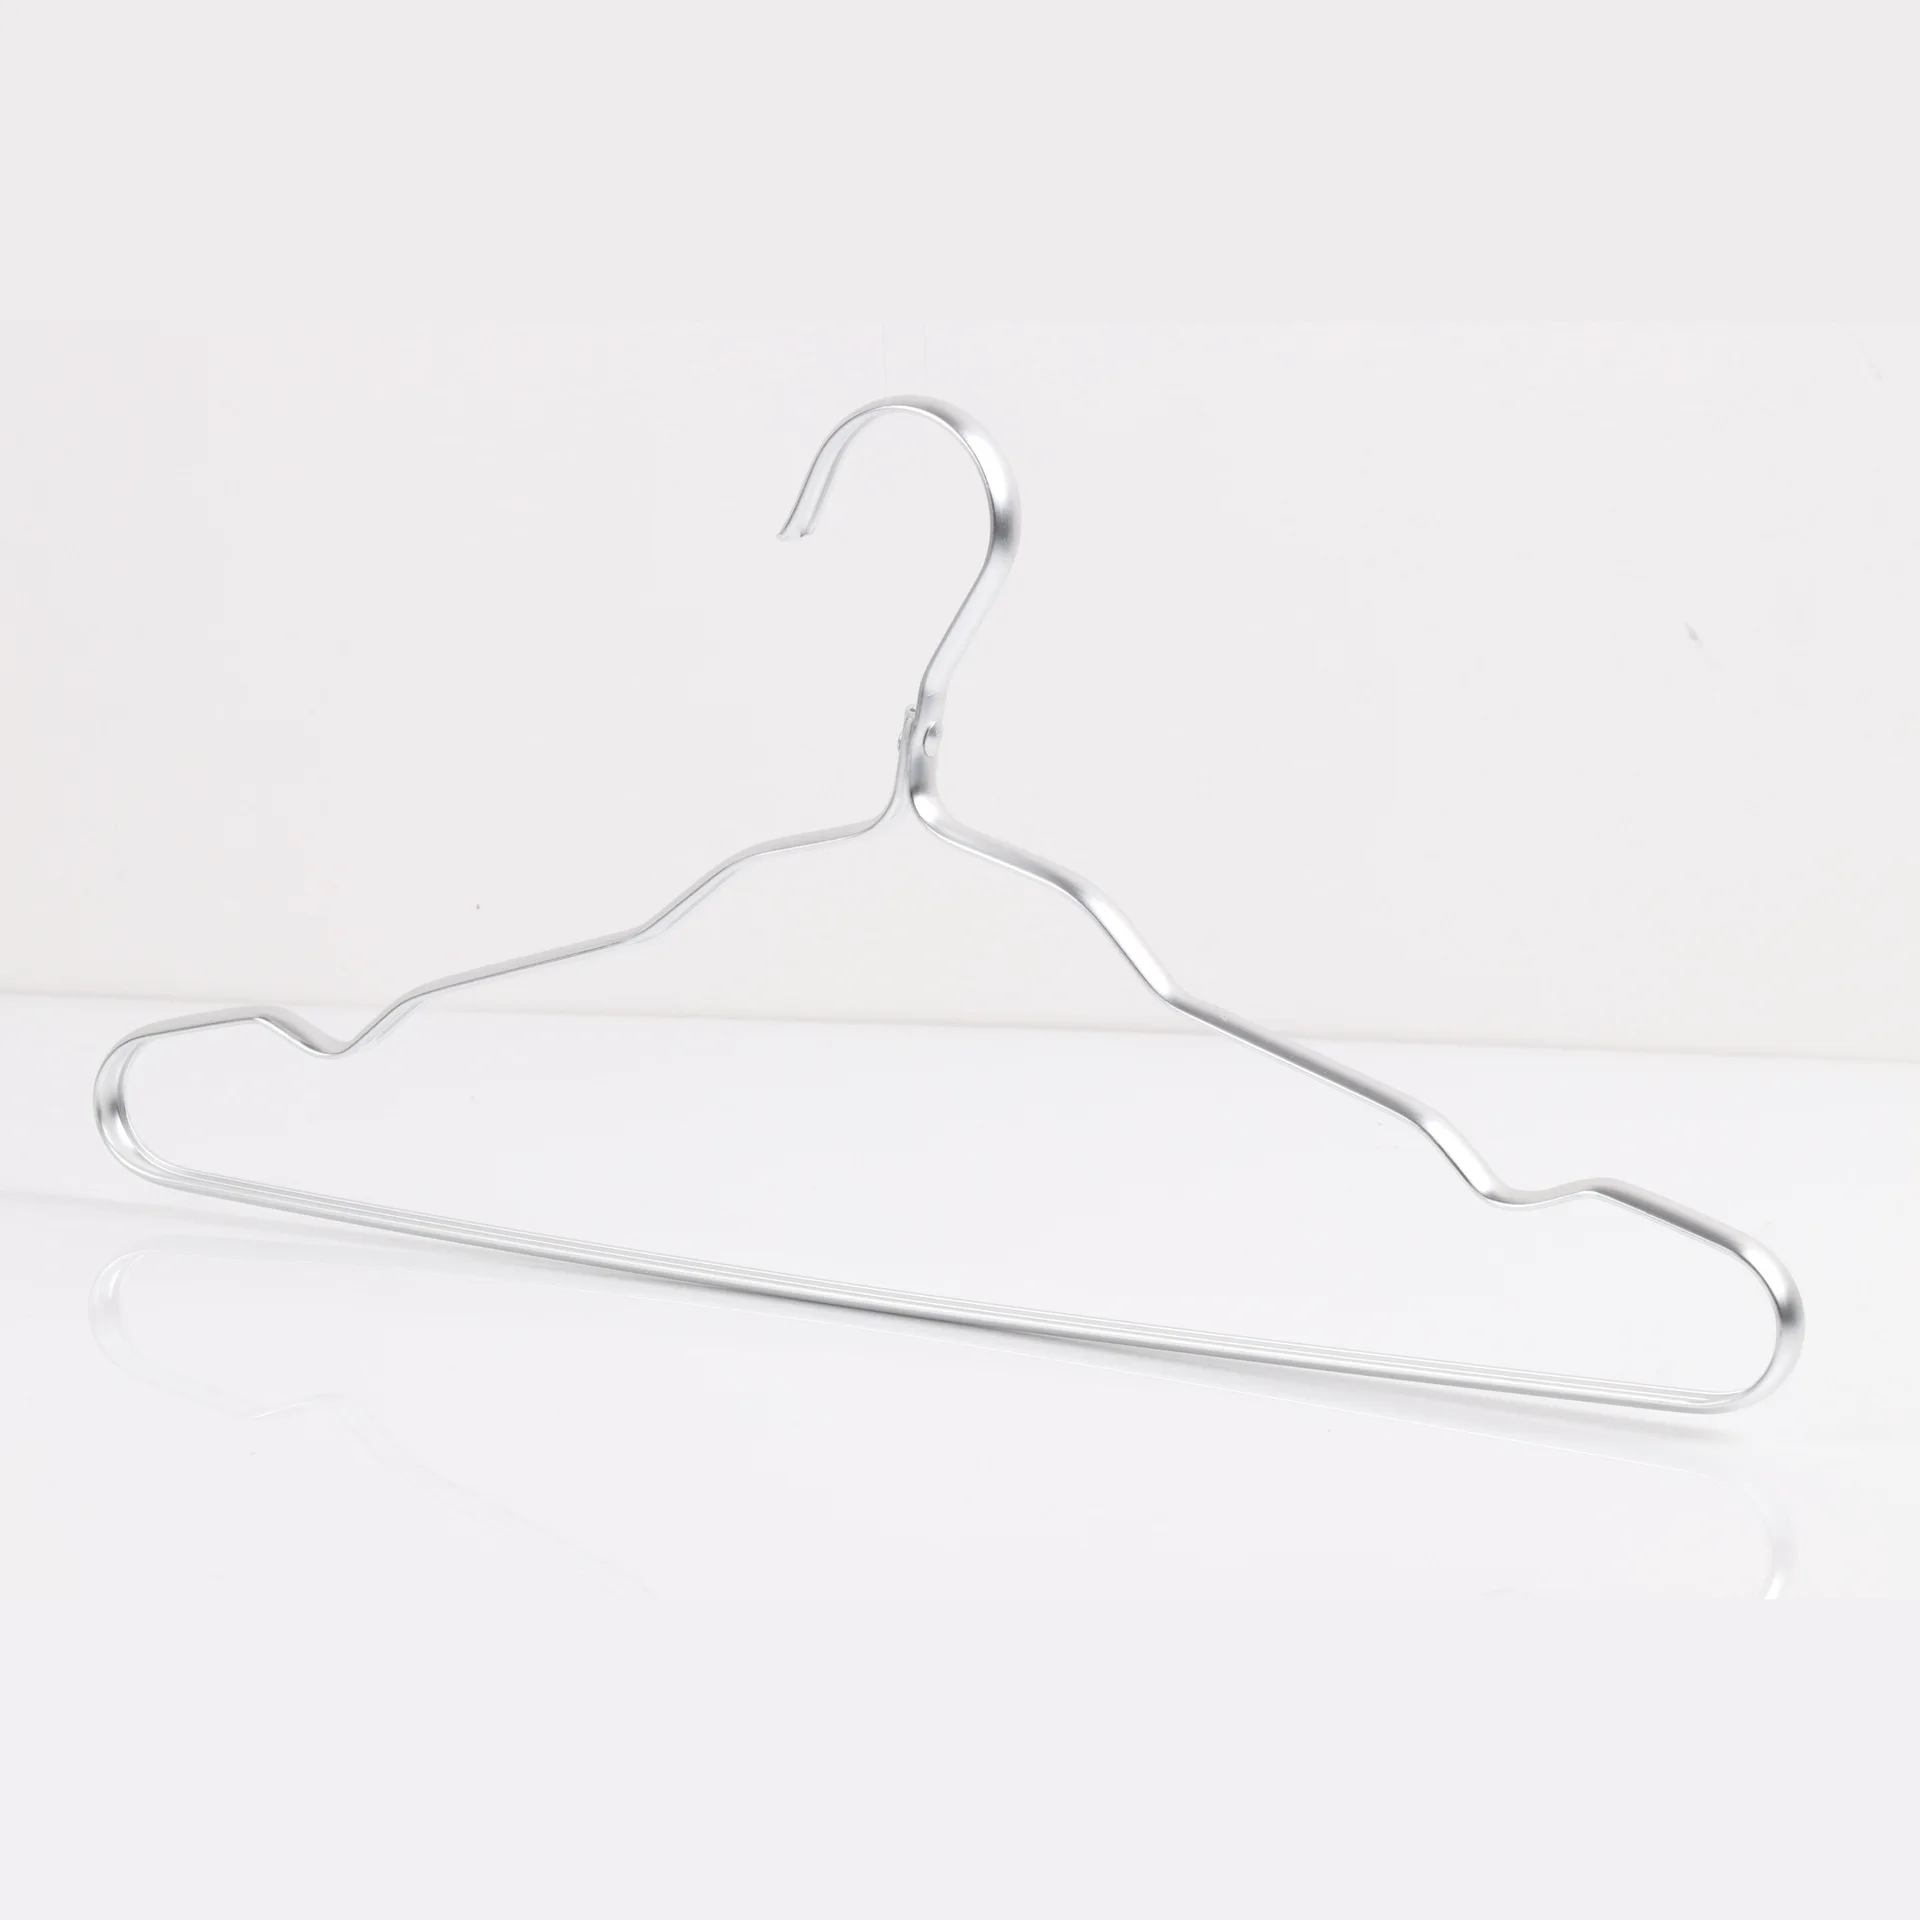 10 шт. Высокое качество алюминиевый сплав противоскользящая вешалка для одежды водостойкая ветрозащитная прочная металлическая вешалка для рубашек 42 см - Цвет: Silver